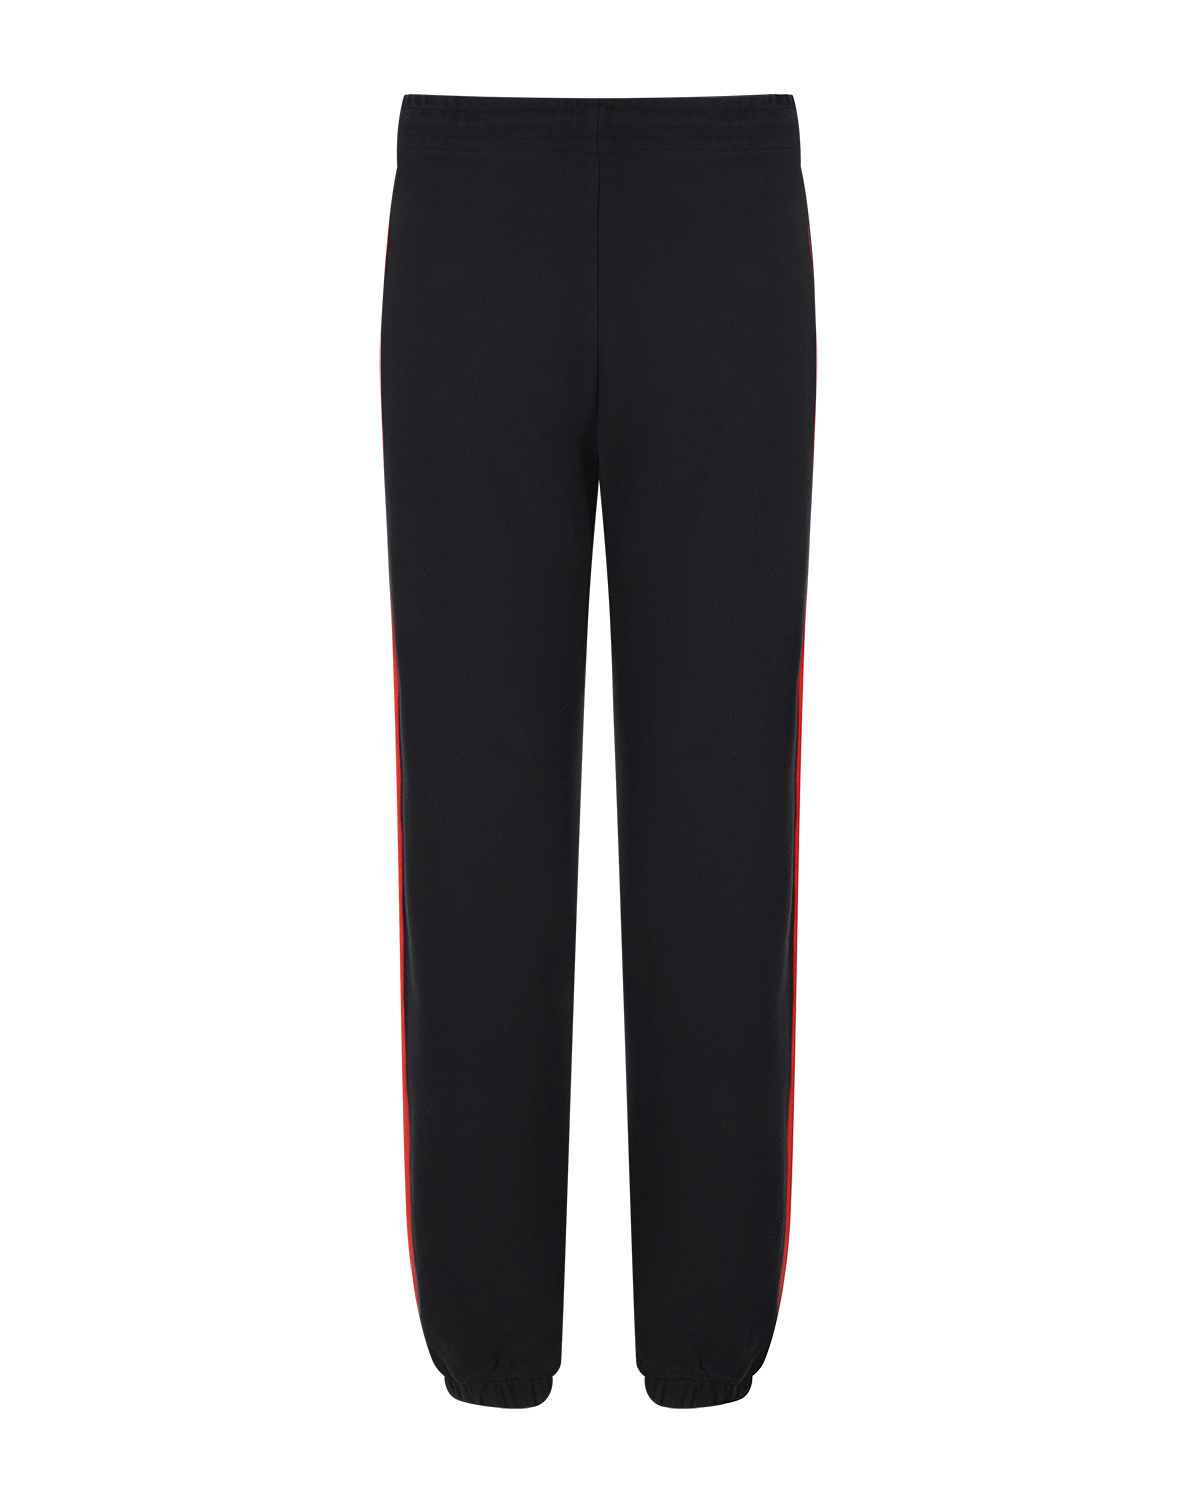 Черные спортивные брюки с красными лампасами MSGM, размер 40, цвет черный - фото 5